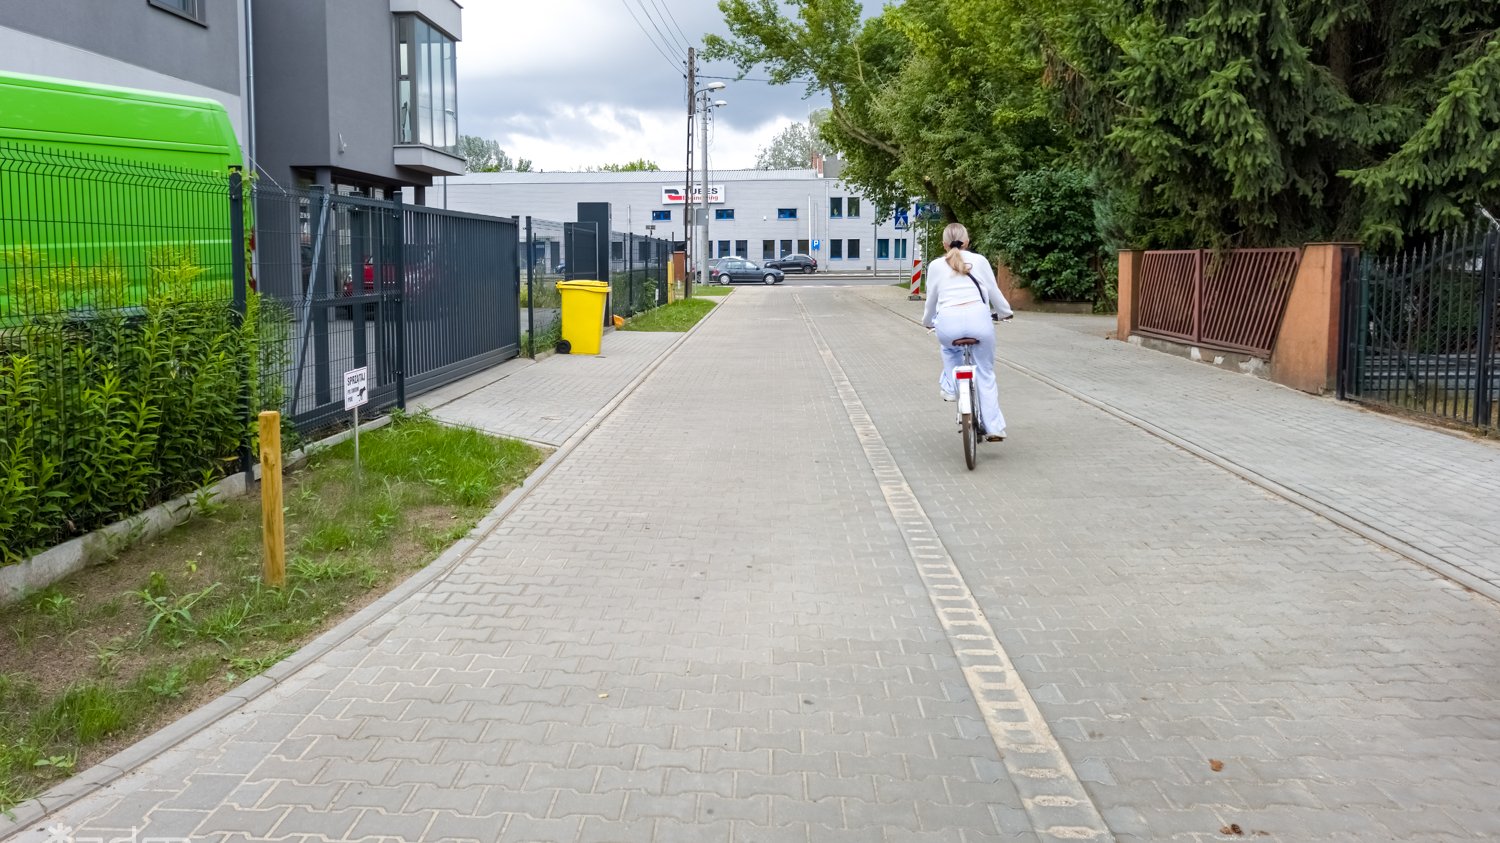 Zdjęcie przedstawia ulice, po której jedzie kobieta na rowerze.